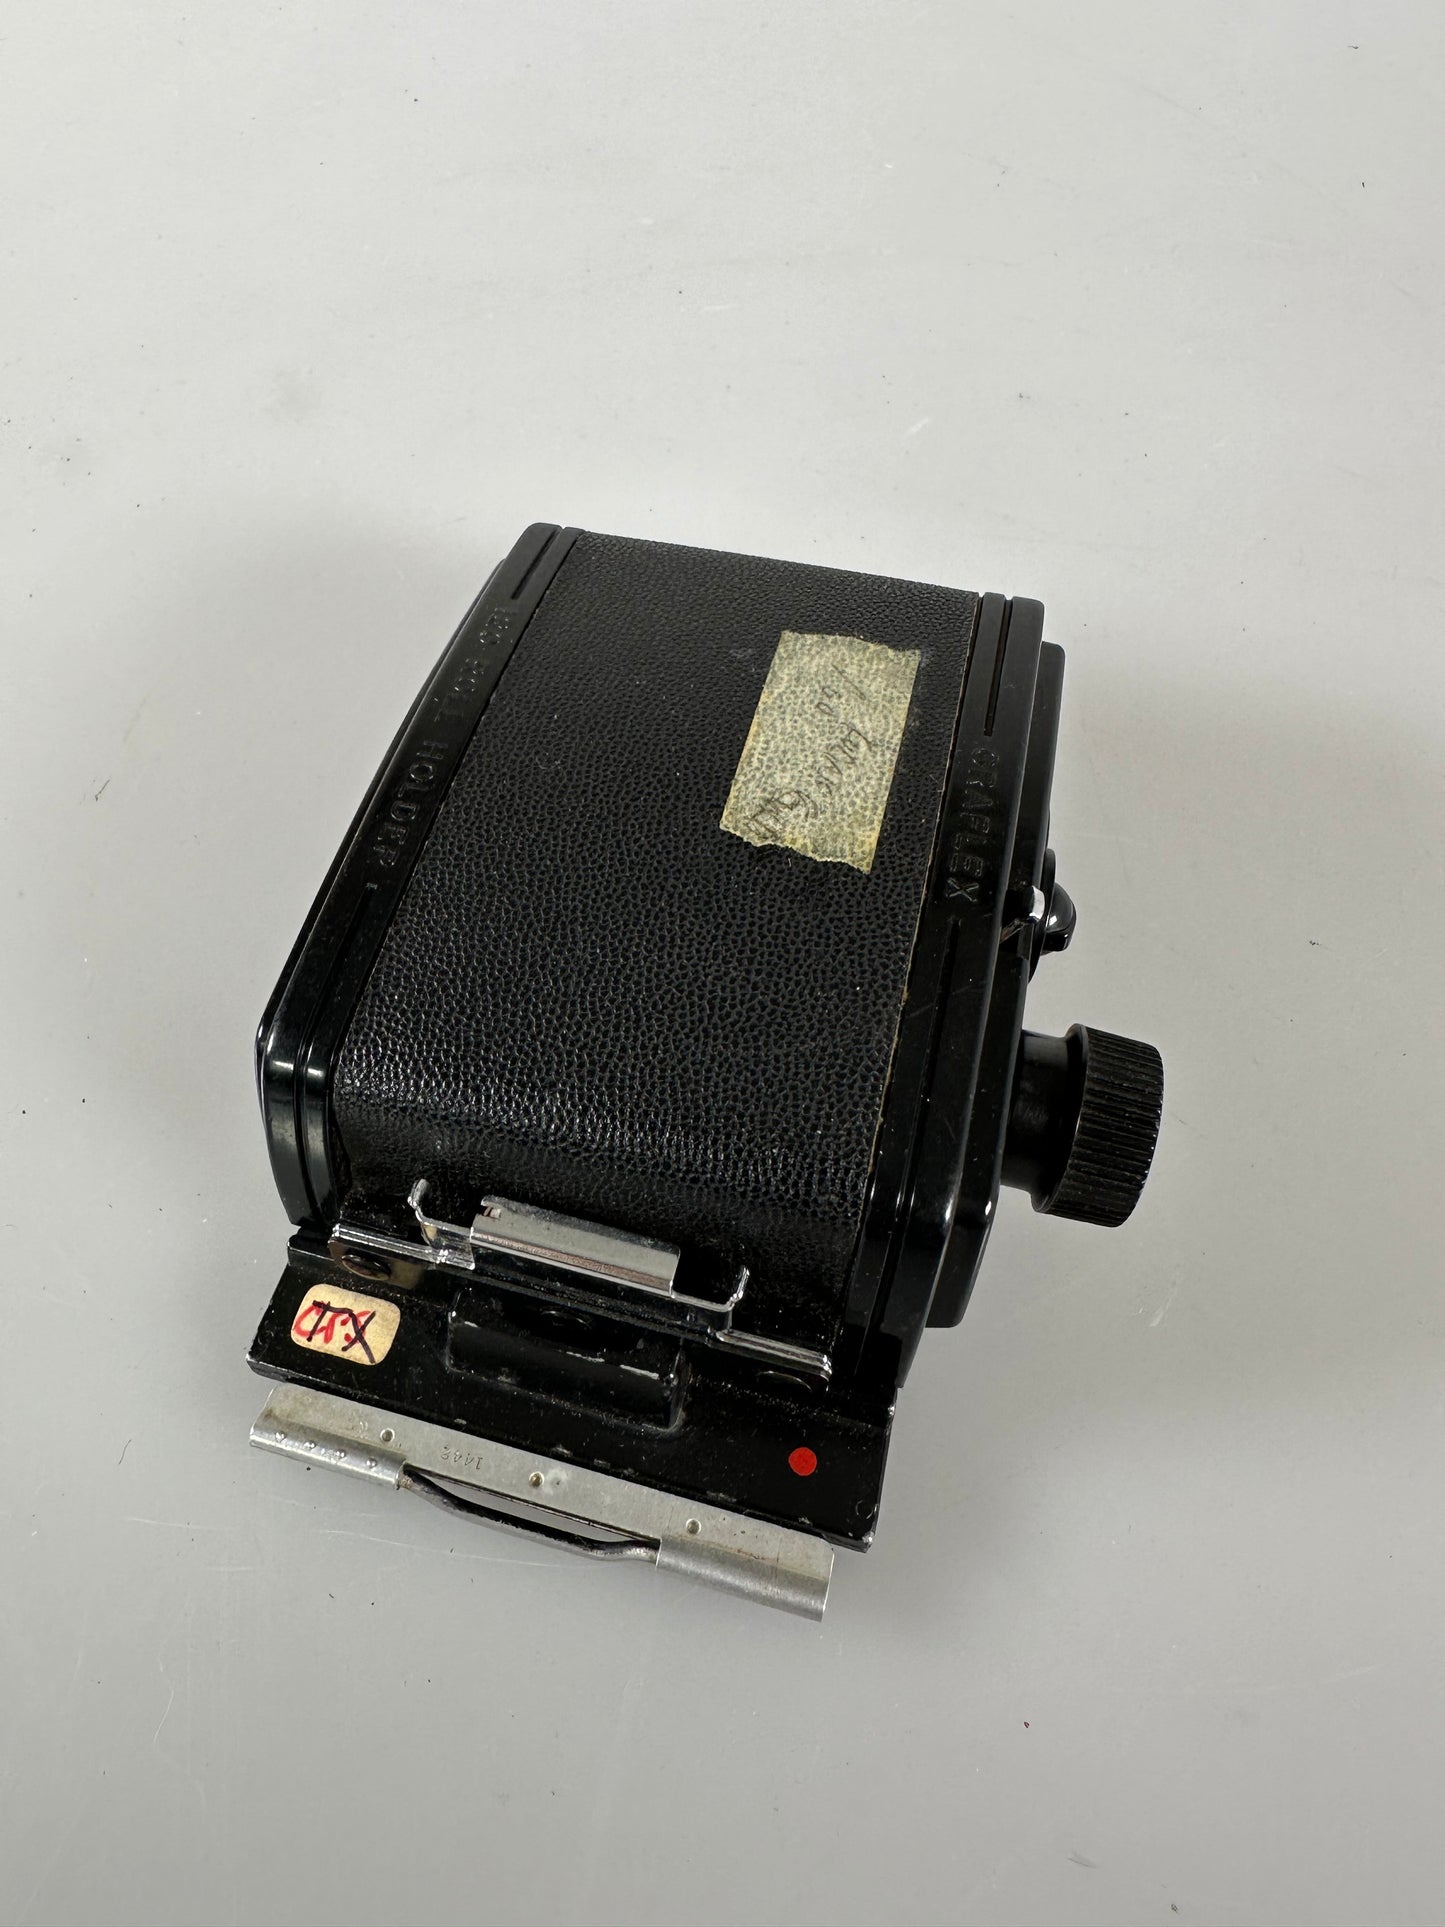 Graflex RH8 120 Roll Film Holder for Graflex SLR Type Camera